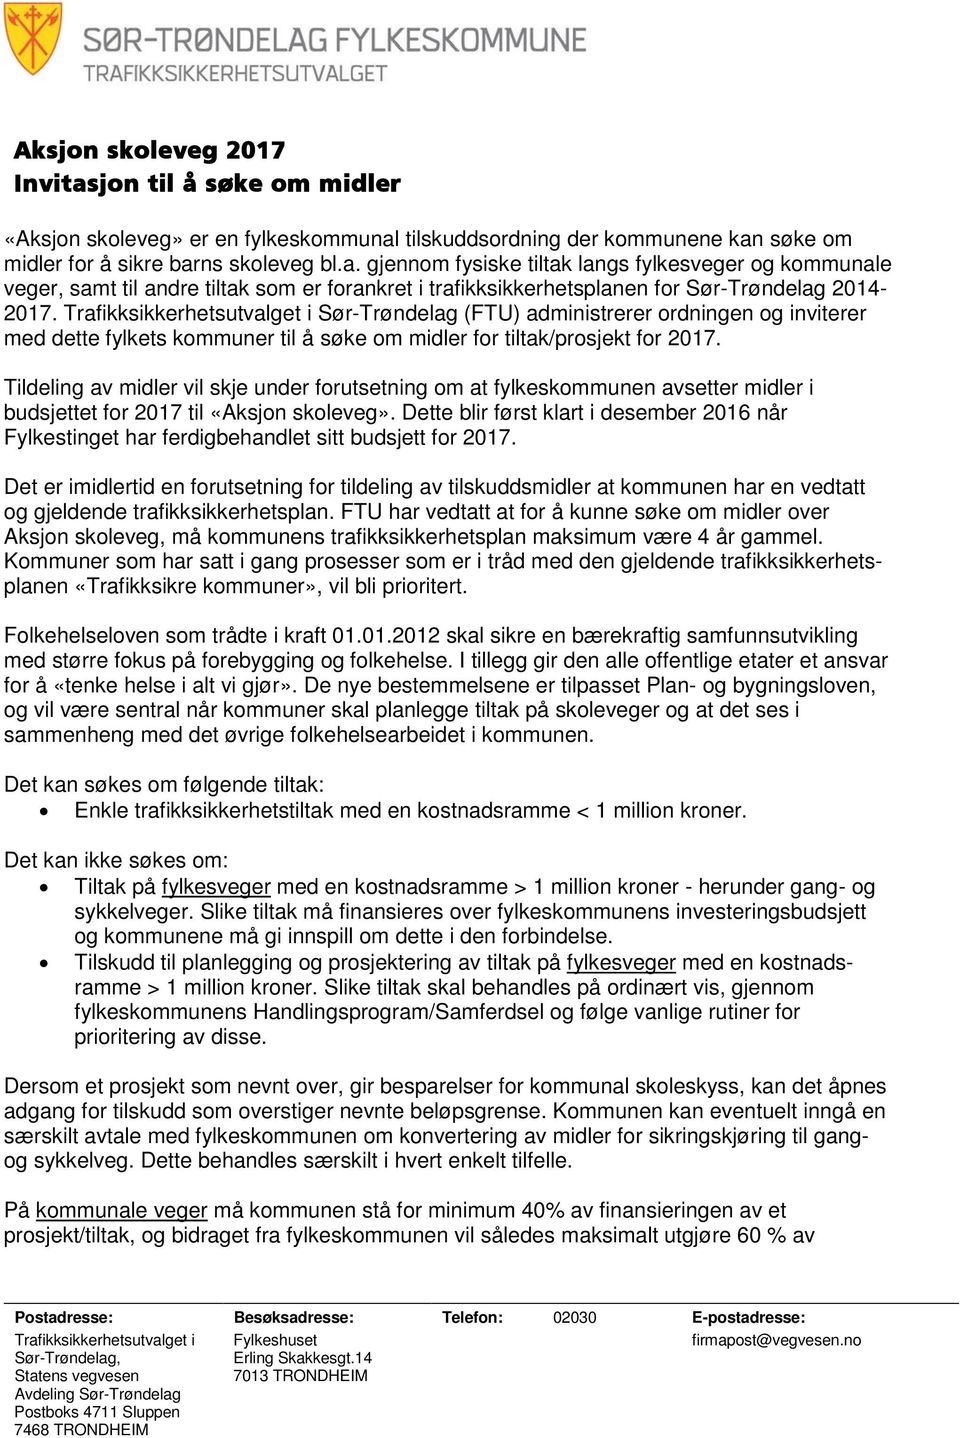 Tildeling av midler vil skje under forutsetning om at fylkeskommunen avsetter midler i budsjettet for 2017 til «Aksjon skoleveg».